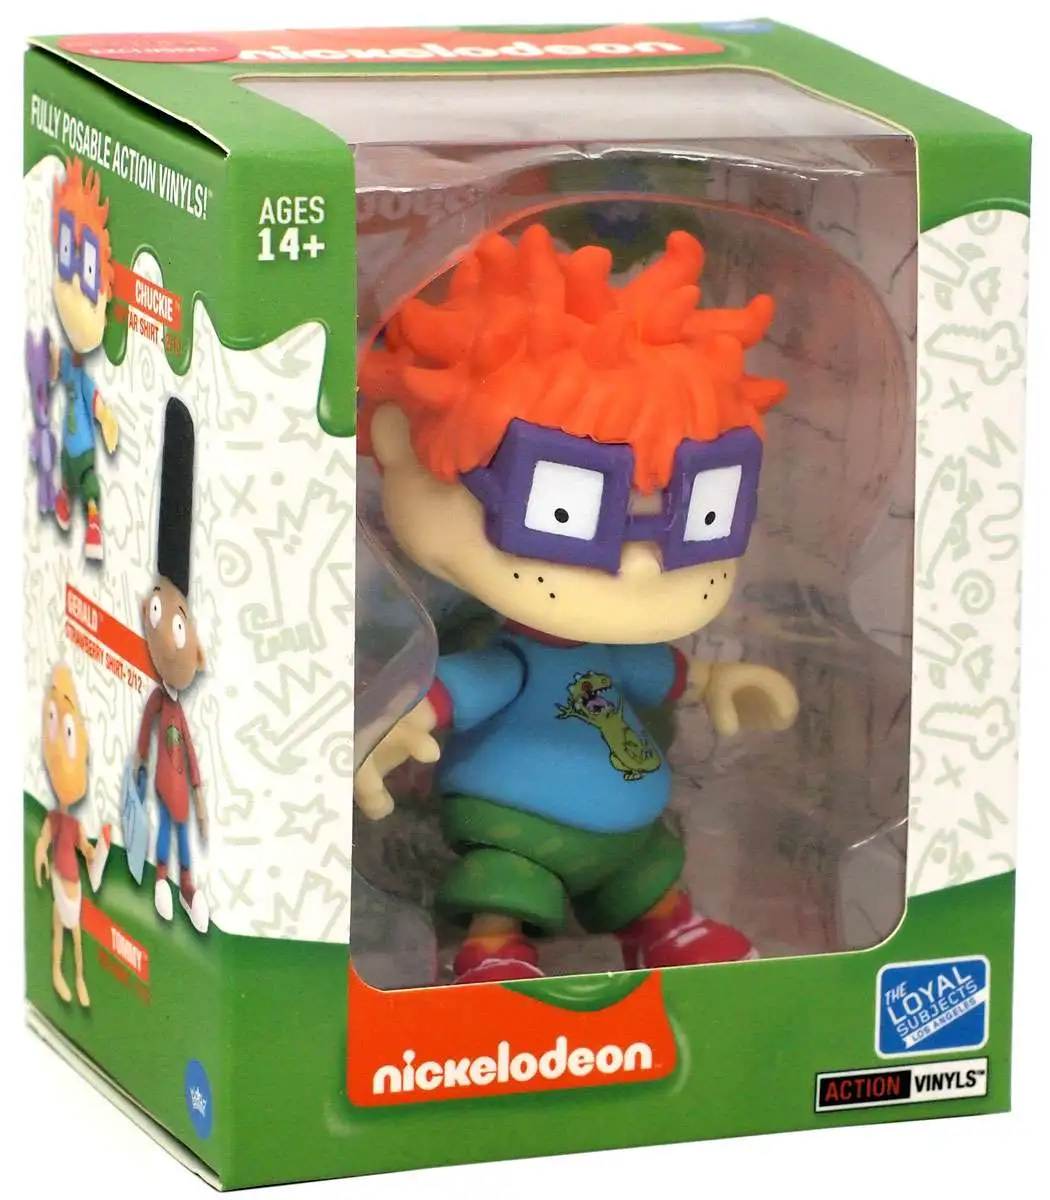 Nickelodeon Rugrats Action Vinyls Chuckie Finster Exclusive Vinyl Figure  [Reptar Shirt]